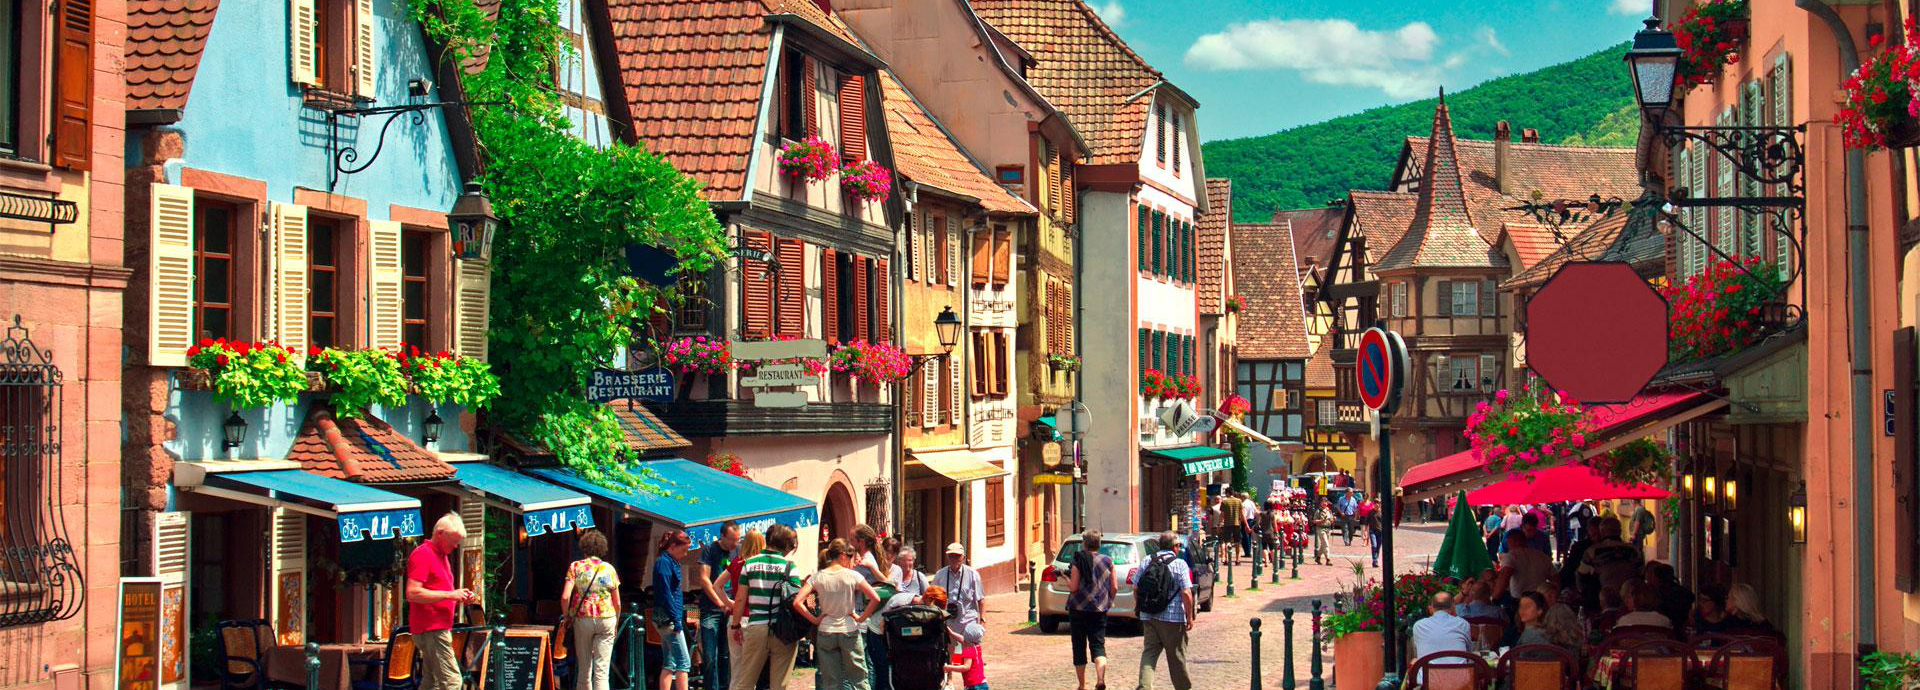 Kaysersberg en Alsace, ses rues pittoresques